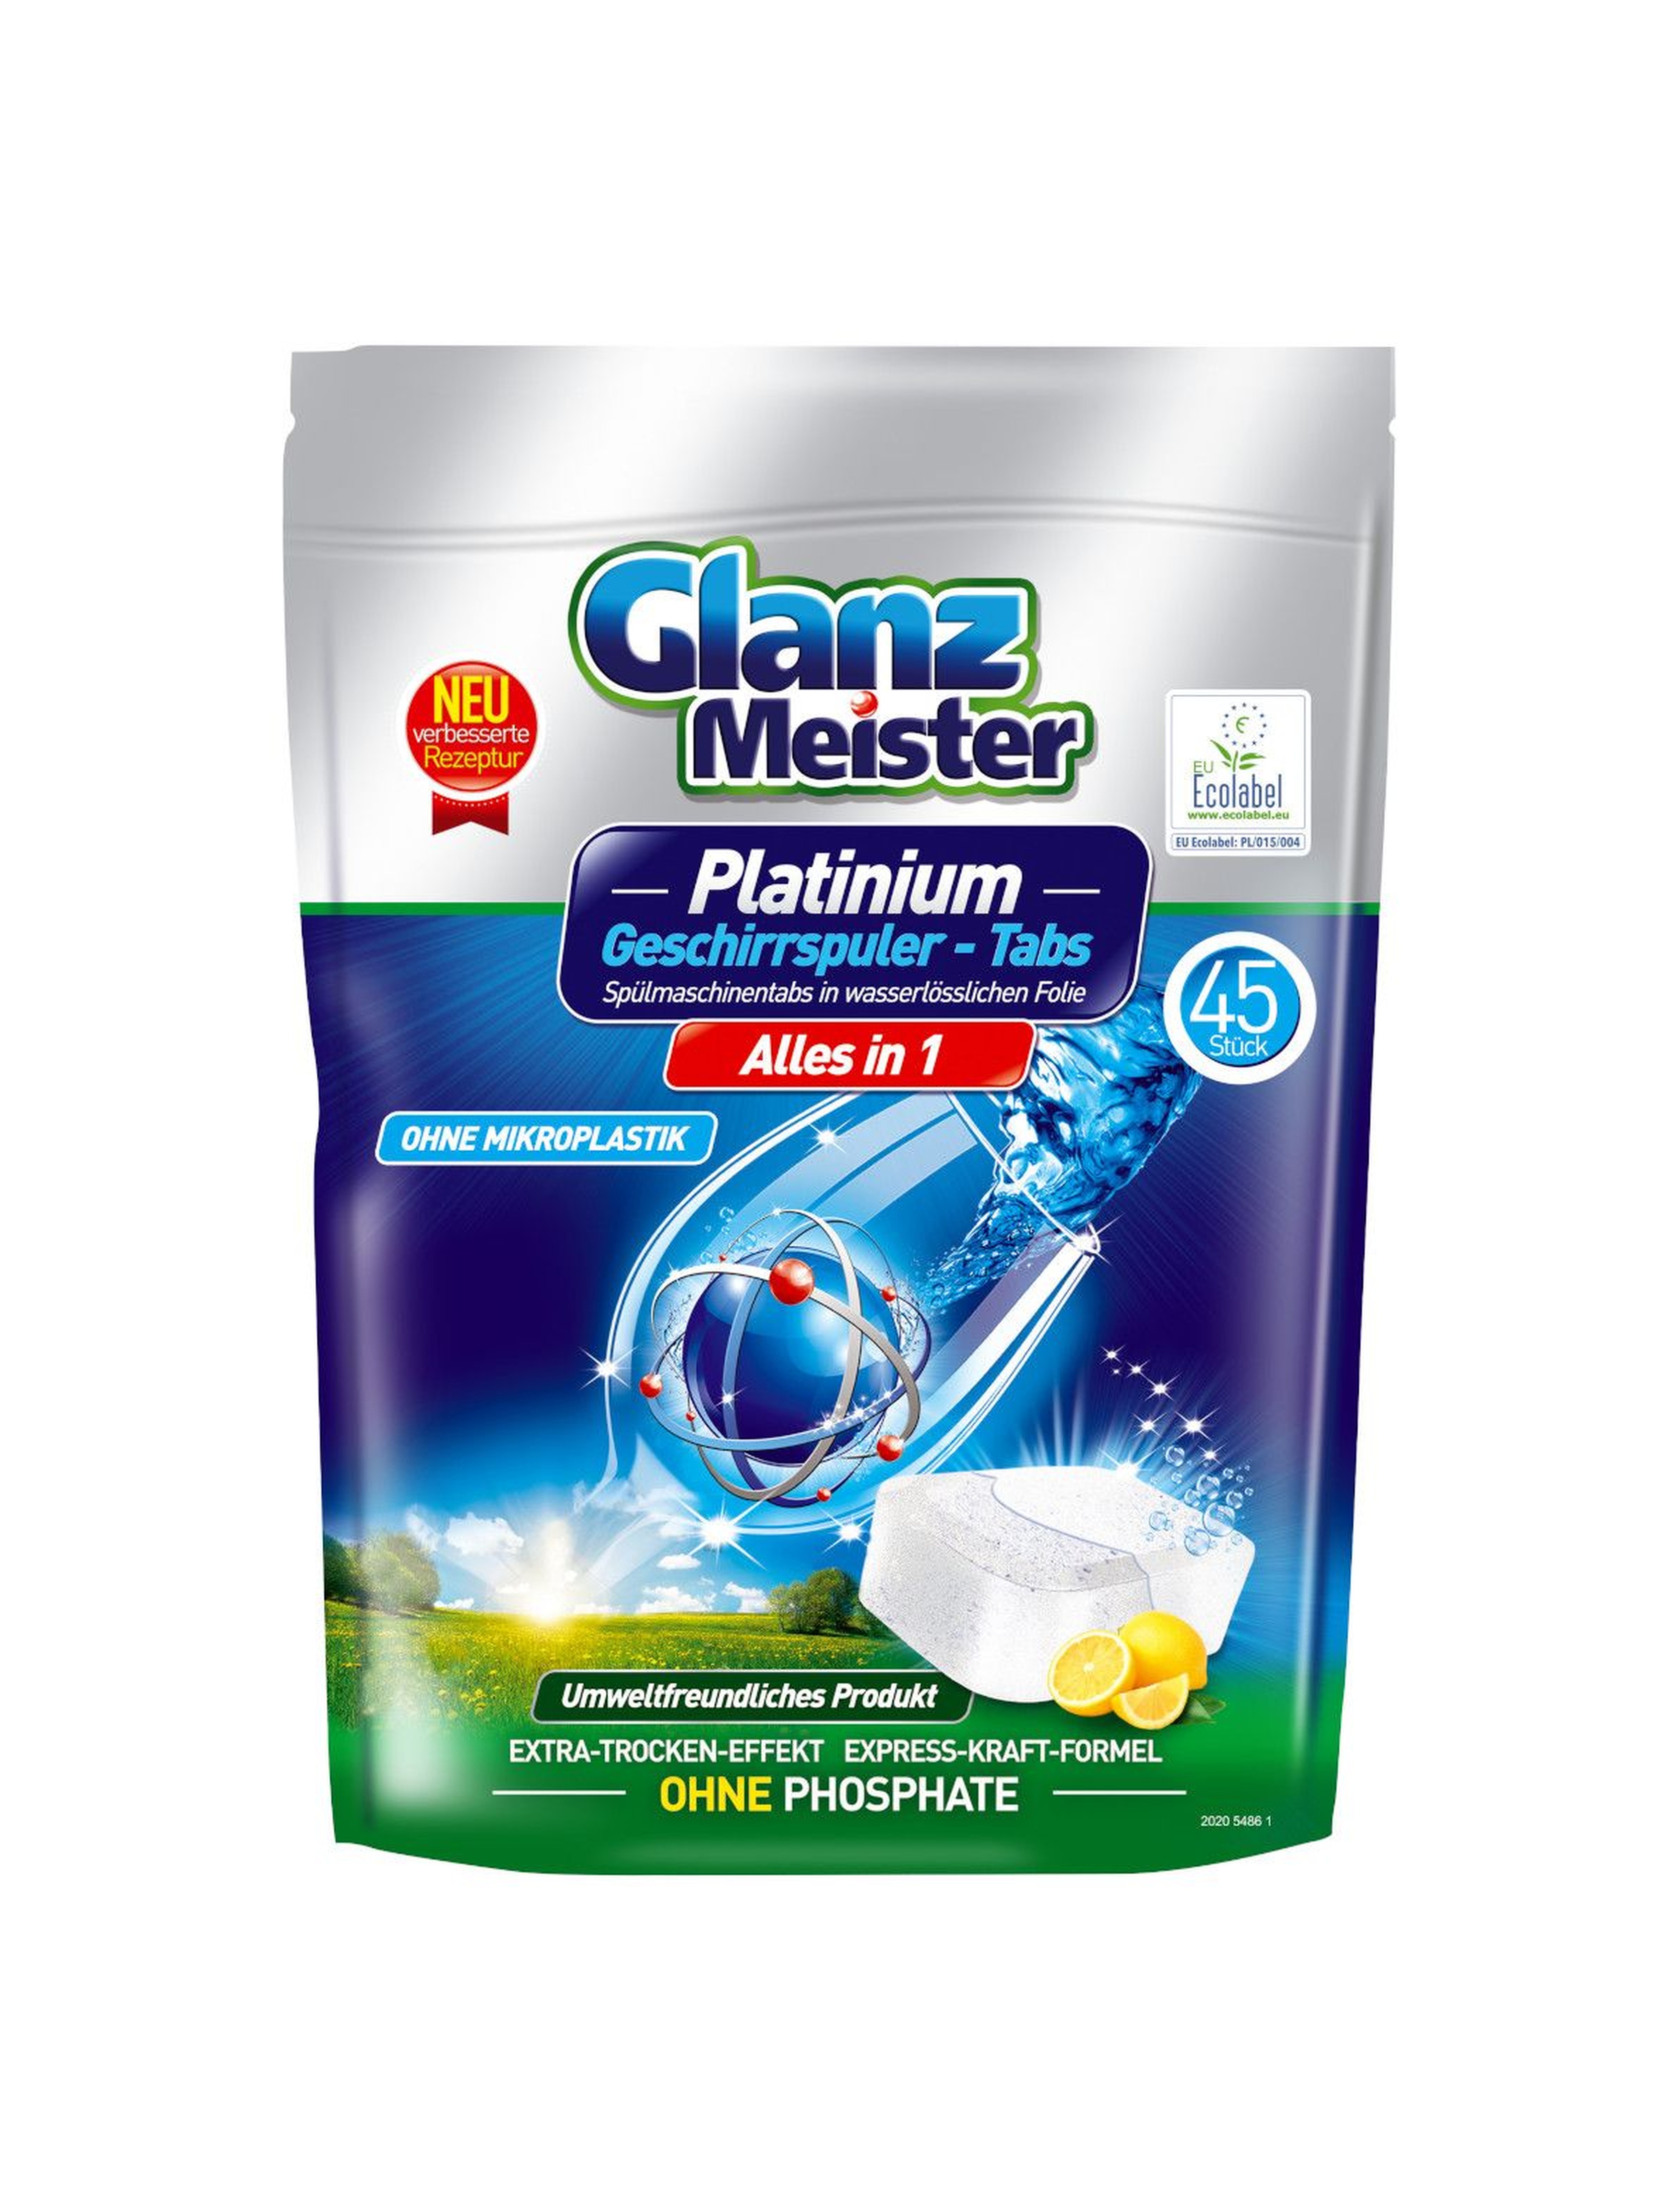 Glanz Meister tabletki do zmywarki Platinum - Eco Label 45szt                                          - 45szt